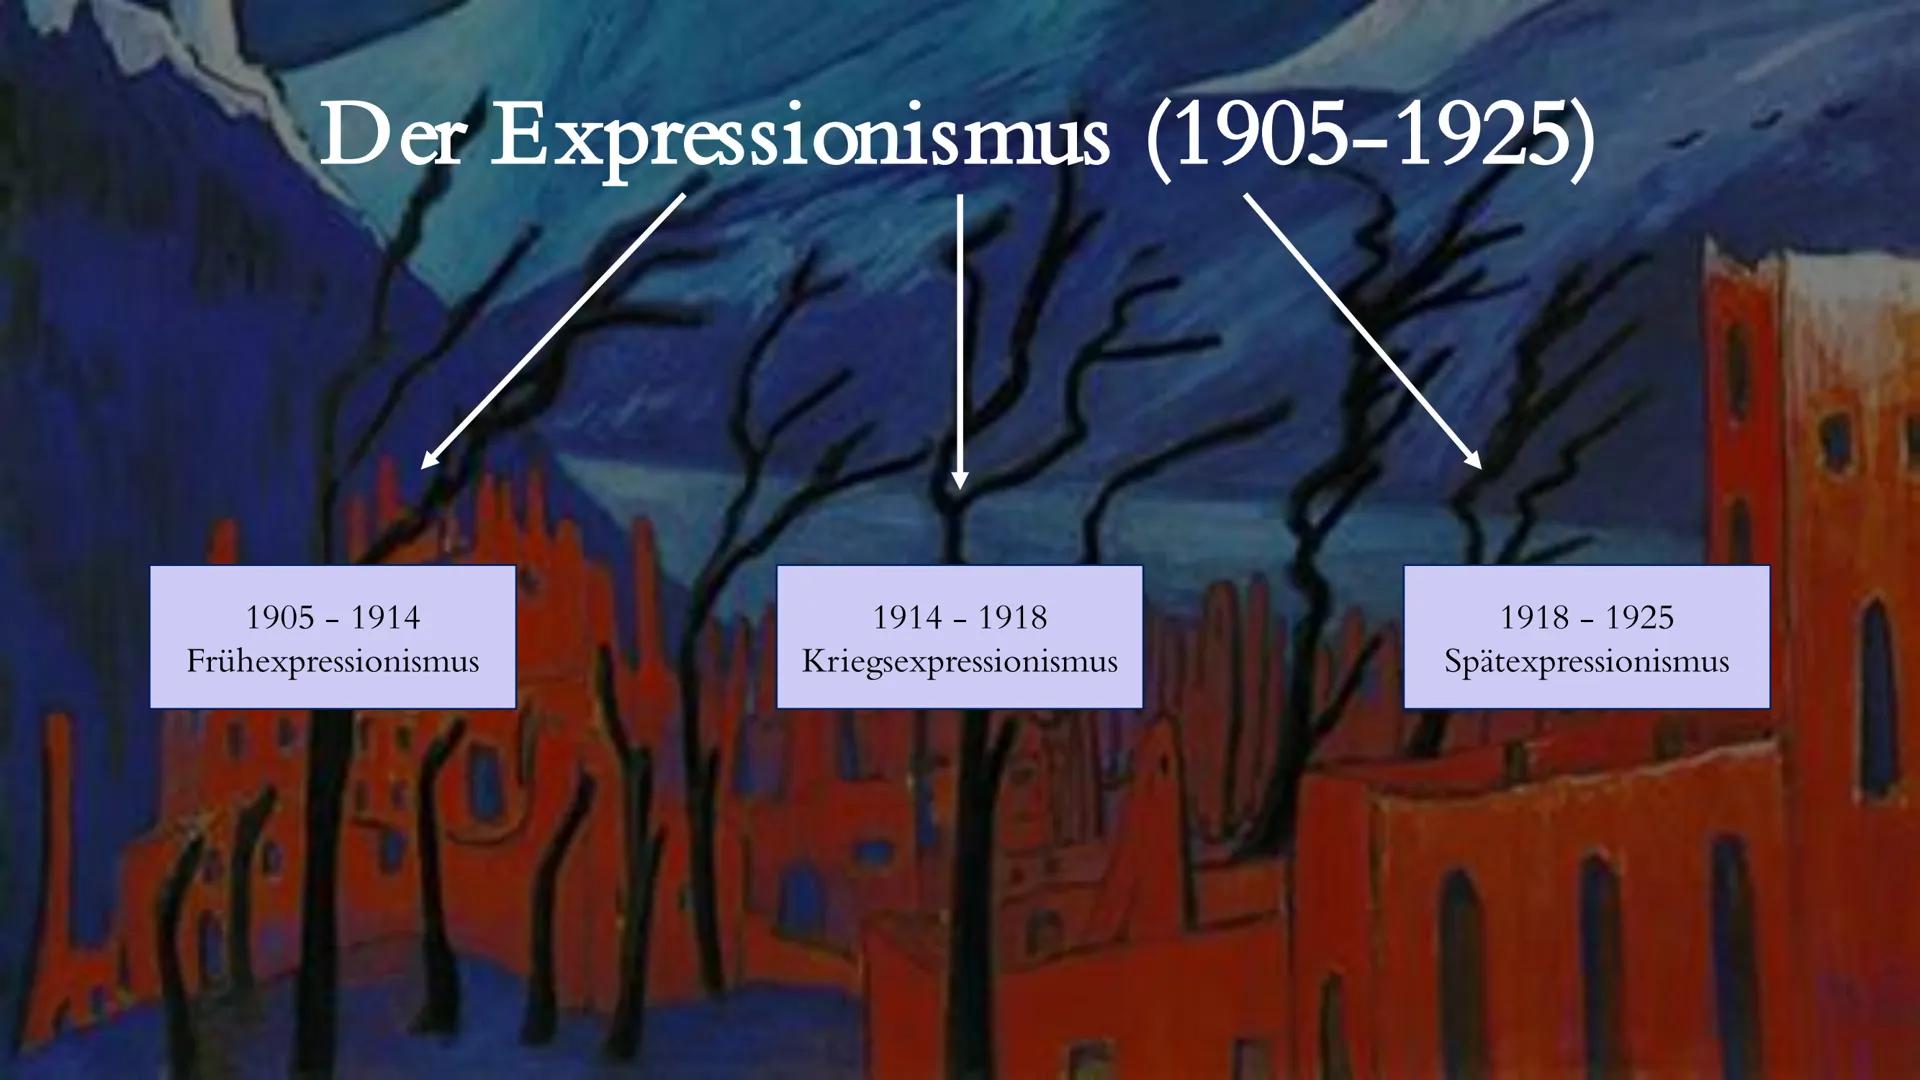 Der Expressionismus (1905-1925)
177
(lat. ,,expressio" = ,,Ausdruck"; steht für Ausdruckskunst) Der Expressionismus (1905-1925)
1
1905 - 191